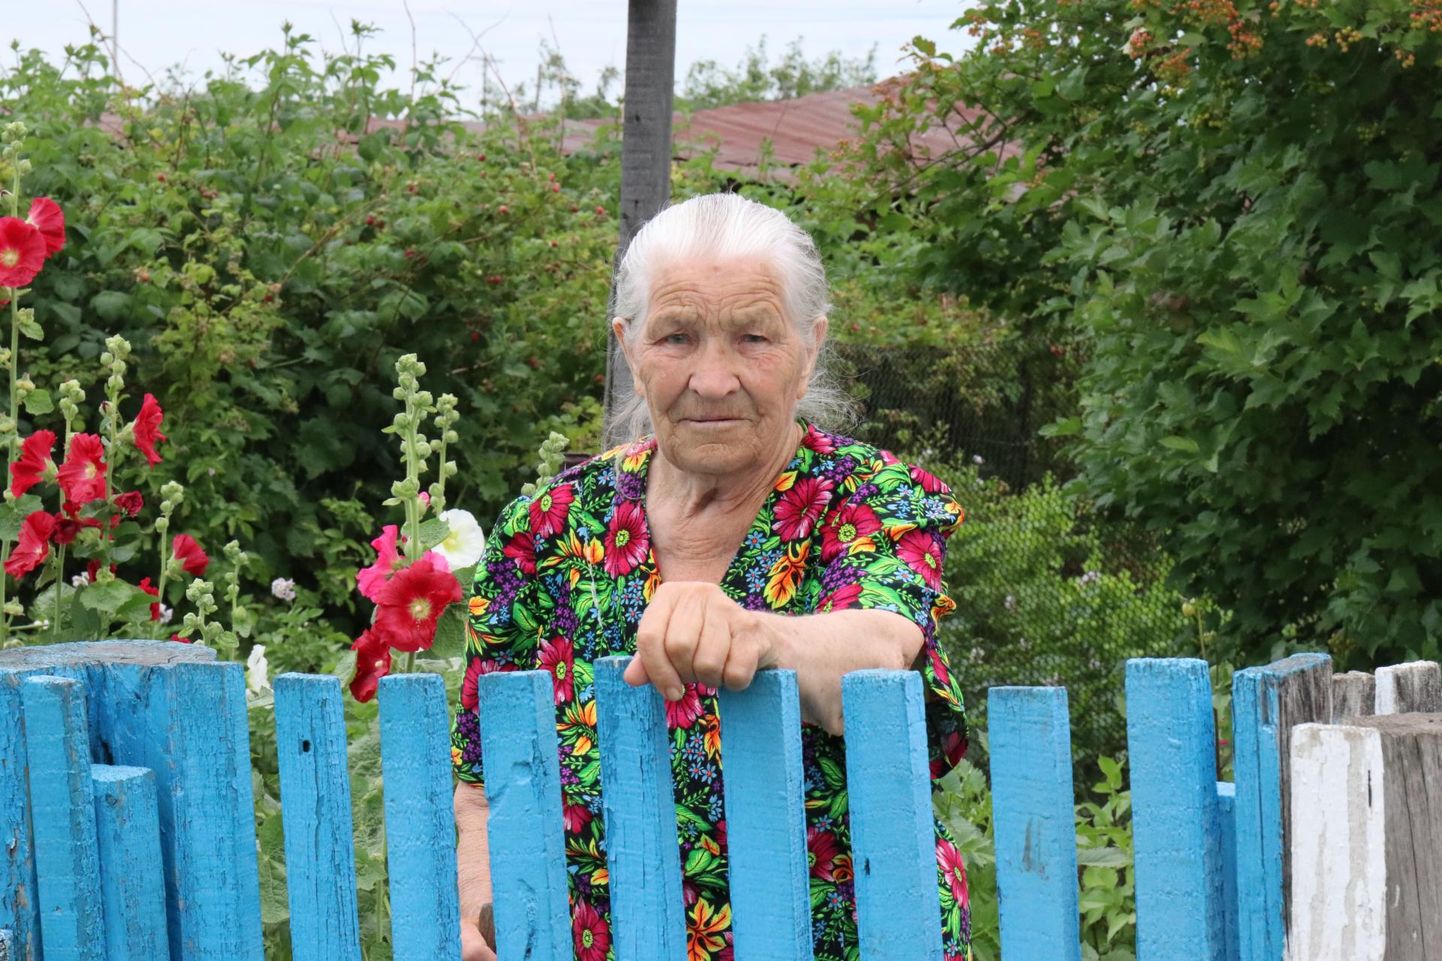 Enamuse elust Rõžkovo eesti-soome-läti külas elanud Elsa Jaanus on kui küla saatuse kehastus: elanikud lahkuvad siit sugulaste juurde linna või kalmistule. Lapselapsed viivad Elsa järgmisel nädalal Omskisse elama. Tagasi ta enam tule, isegi suveks mitte.